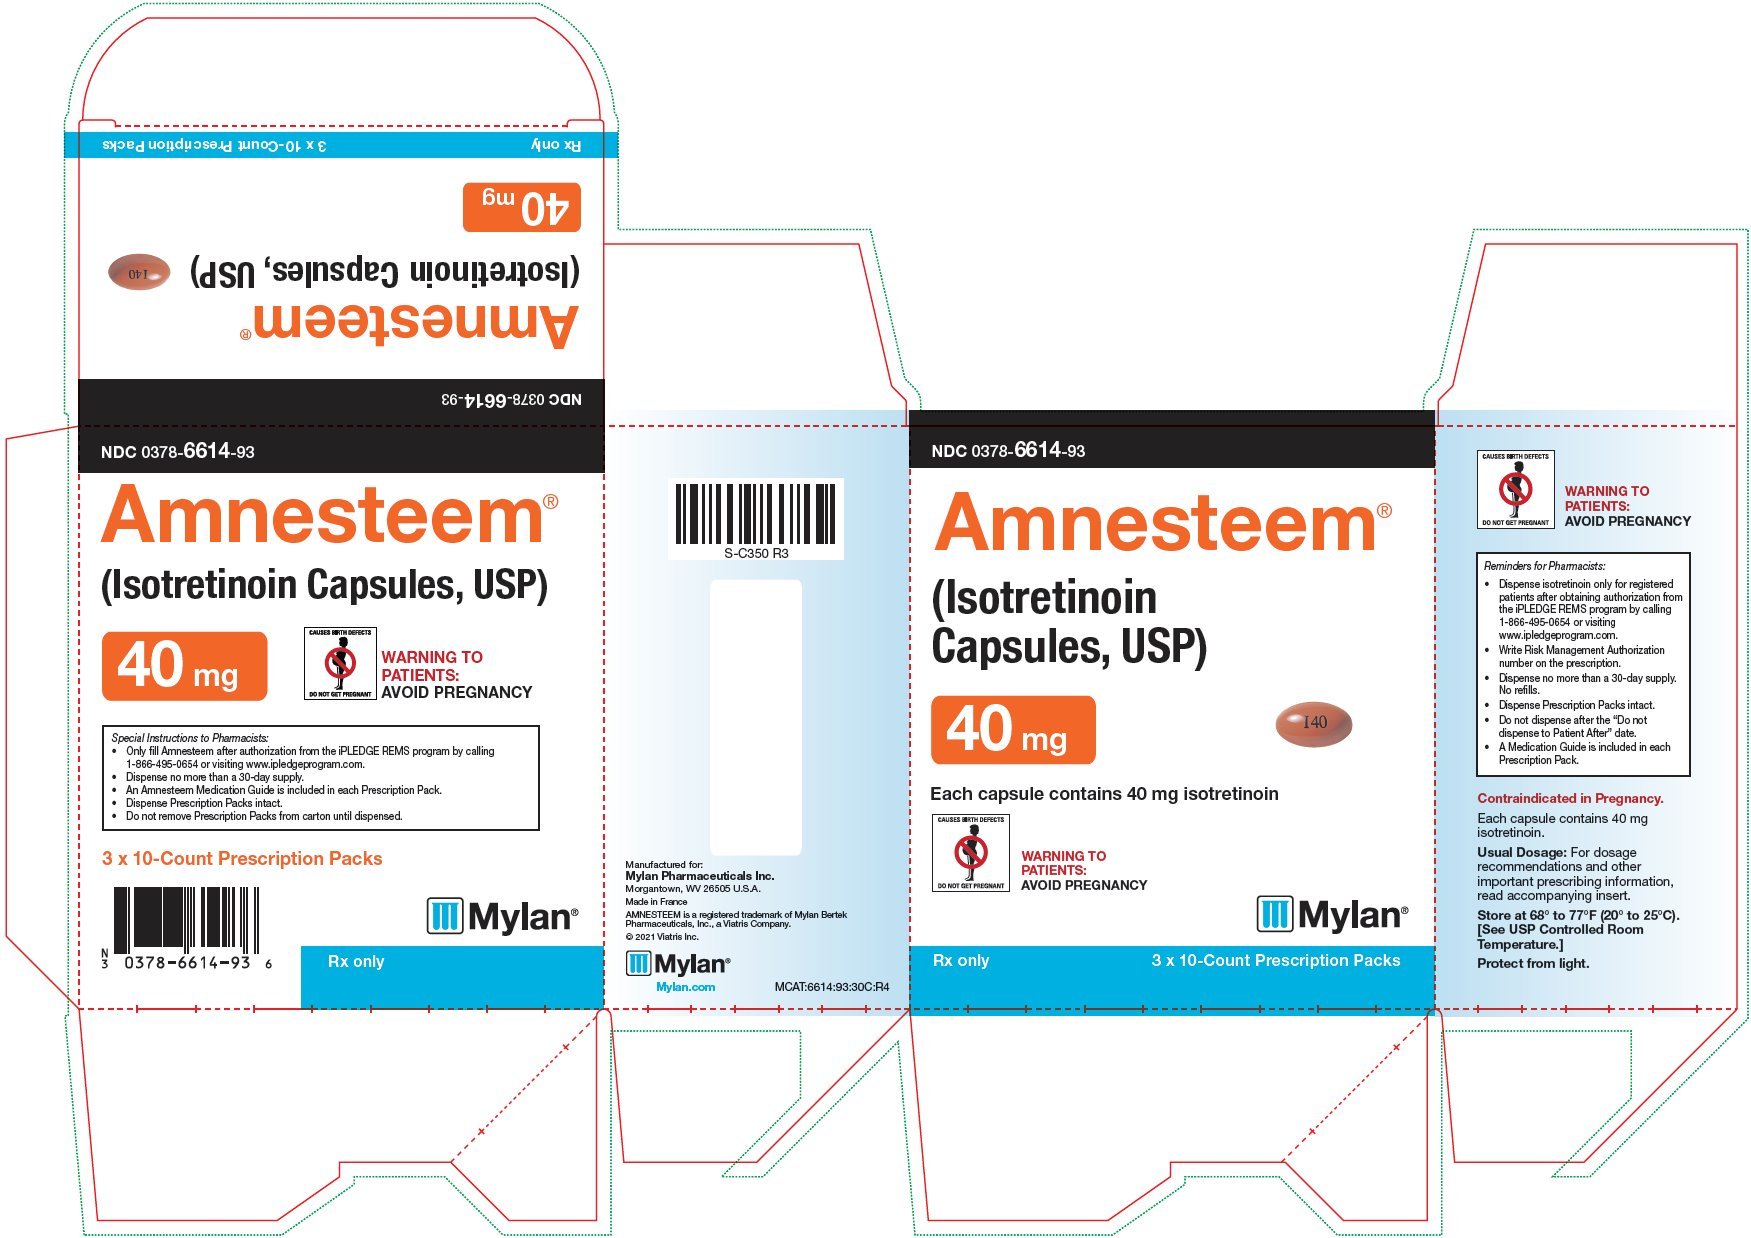 Amnesteem Capsules 40 mg Carton Label